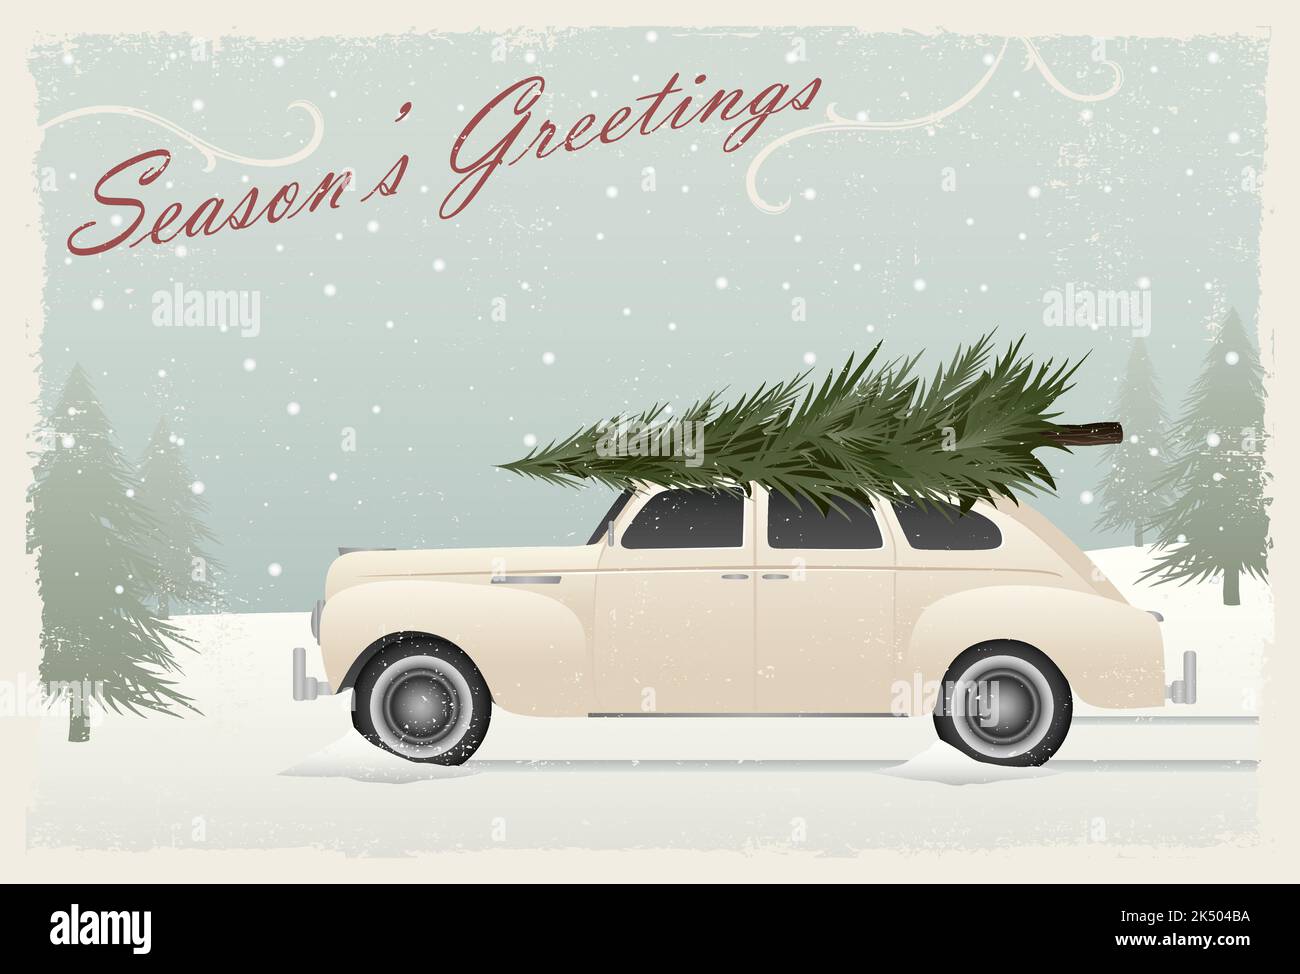 Une voiture vintage avec un arbre de Noël sur le dessus, style carte de voeux avec texture grunge Illustration de Vecteur